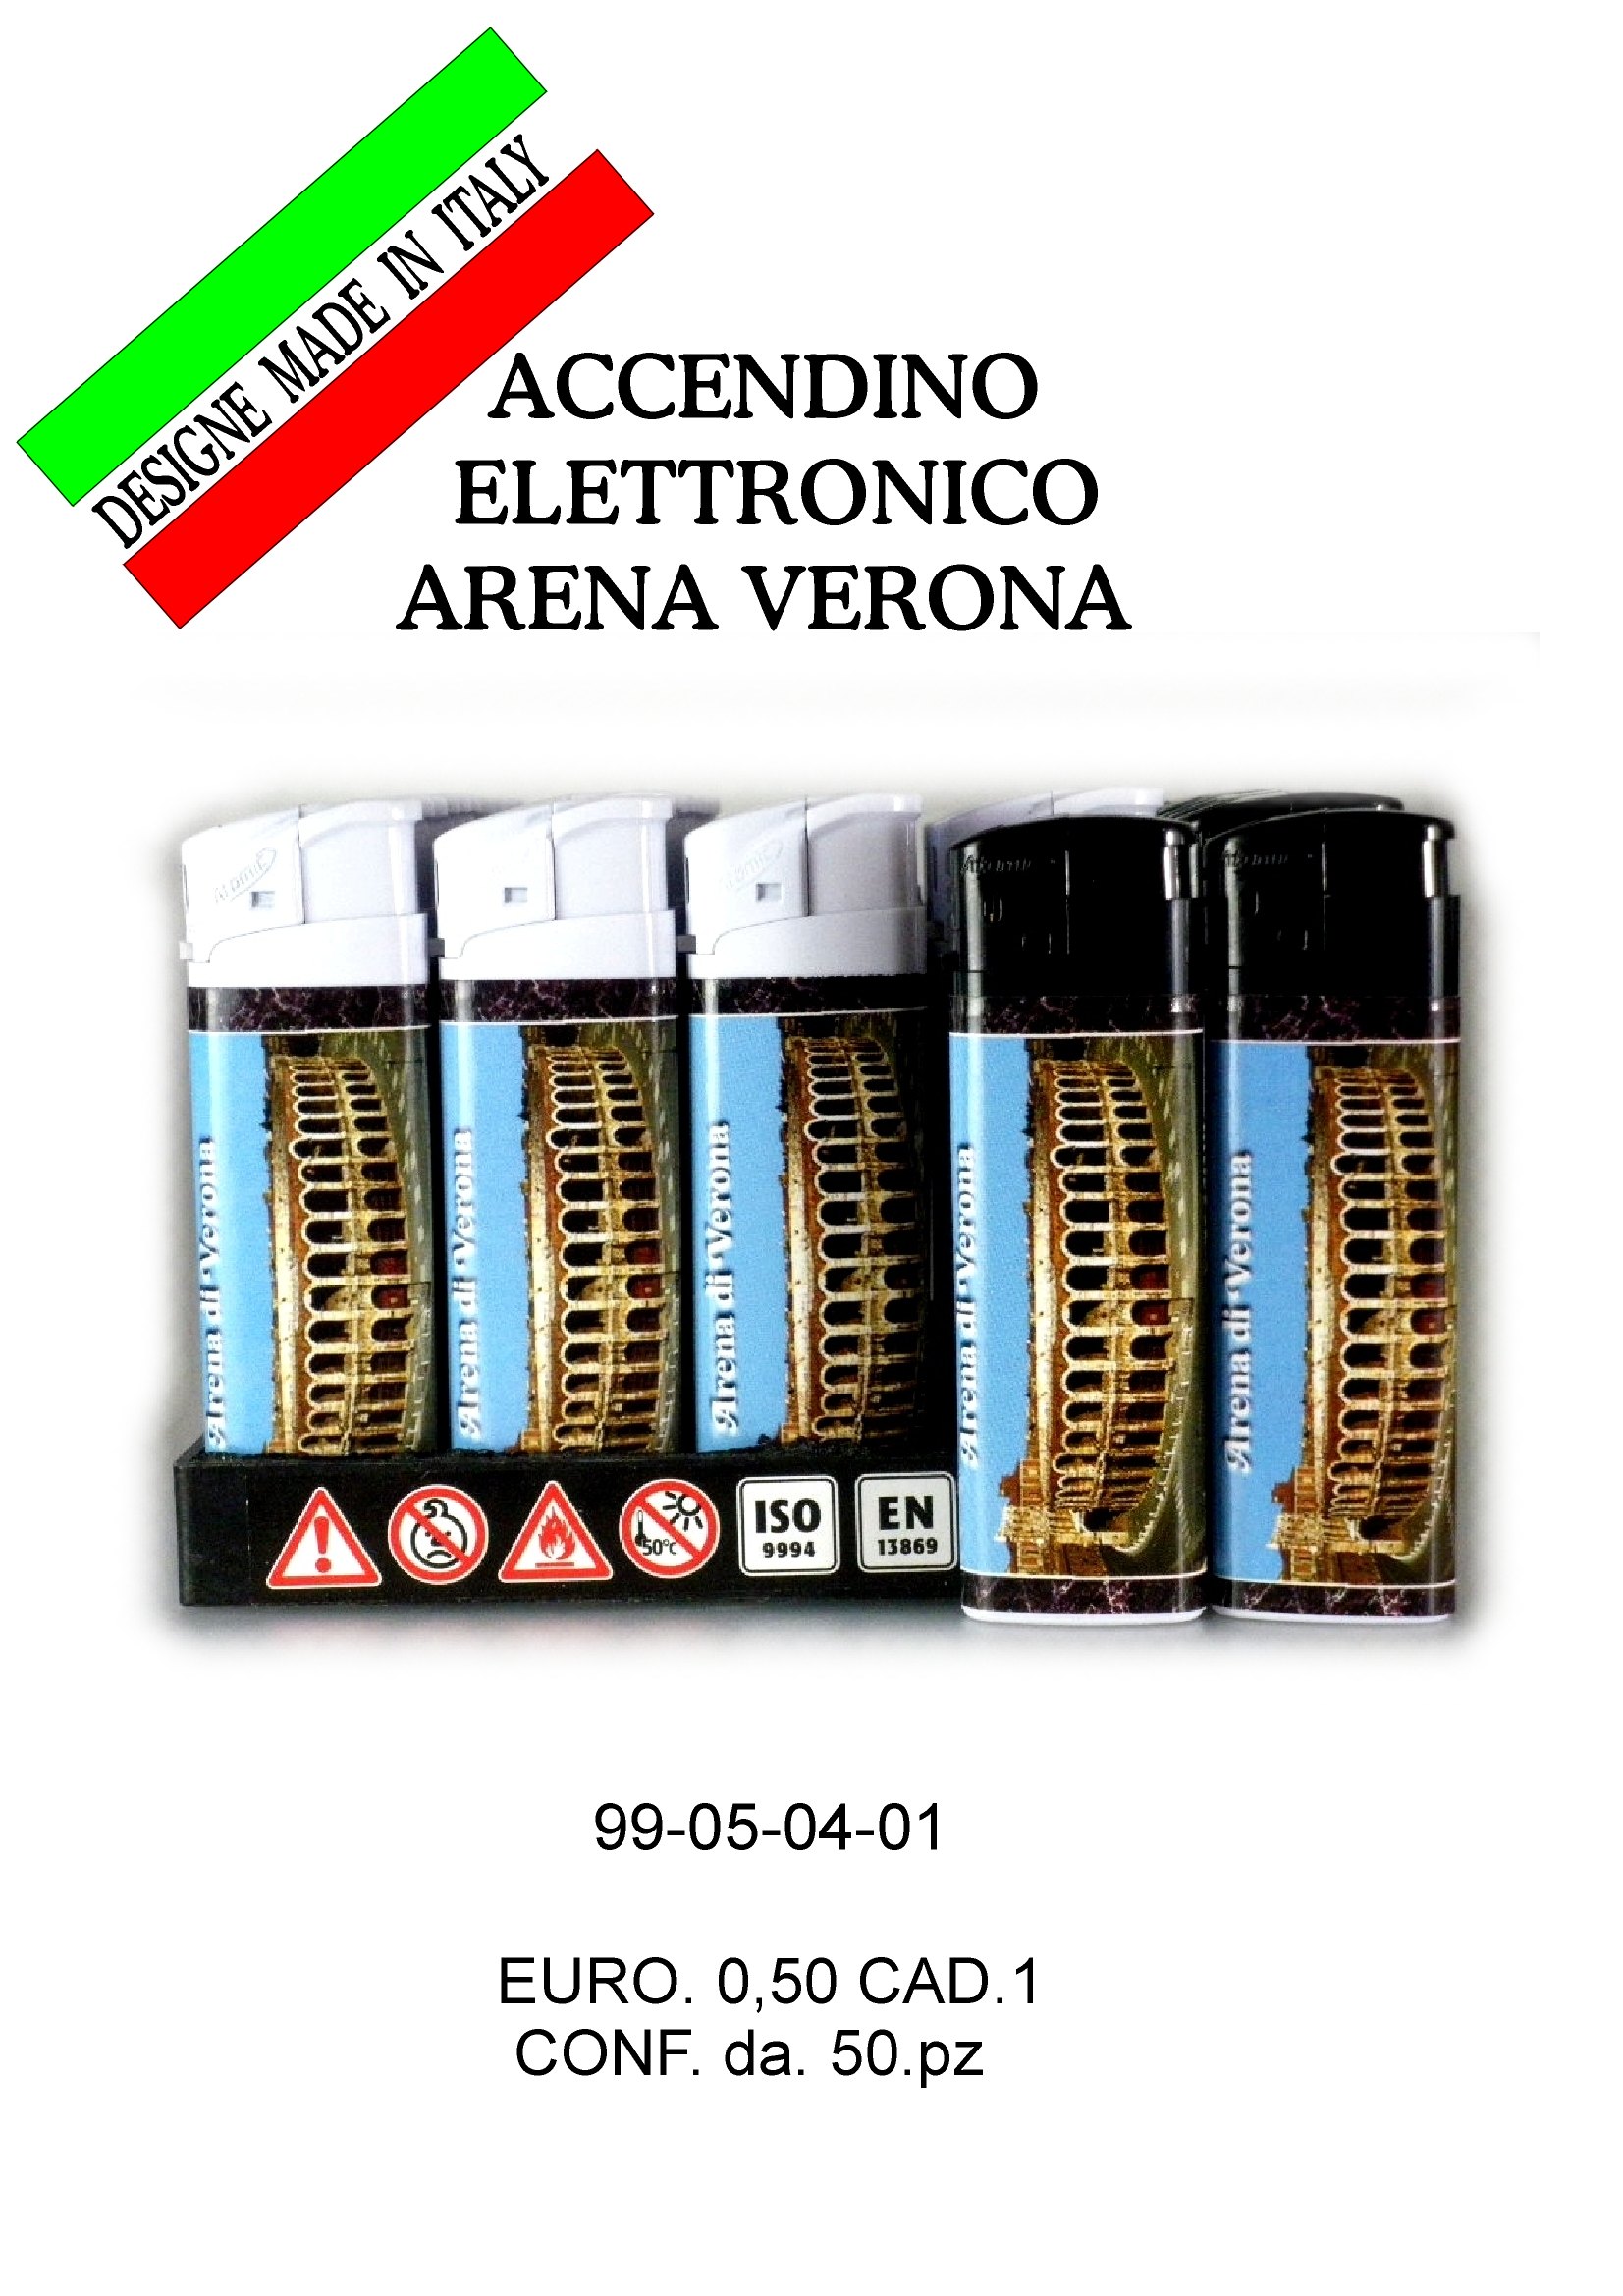 99-05-04-0001 Accendini Verona Gettabili Arena CONFEZIONI da 50 Pz.